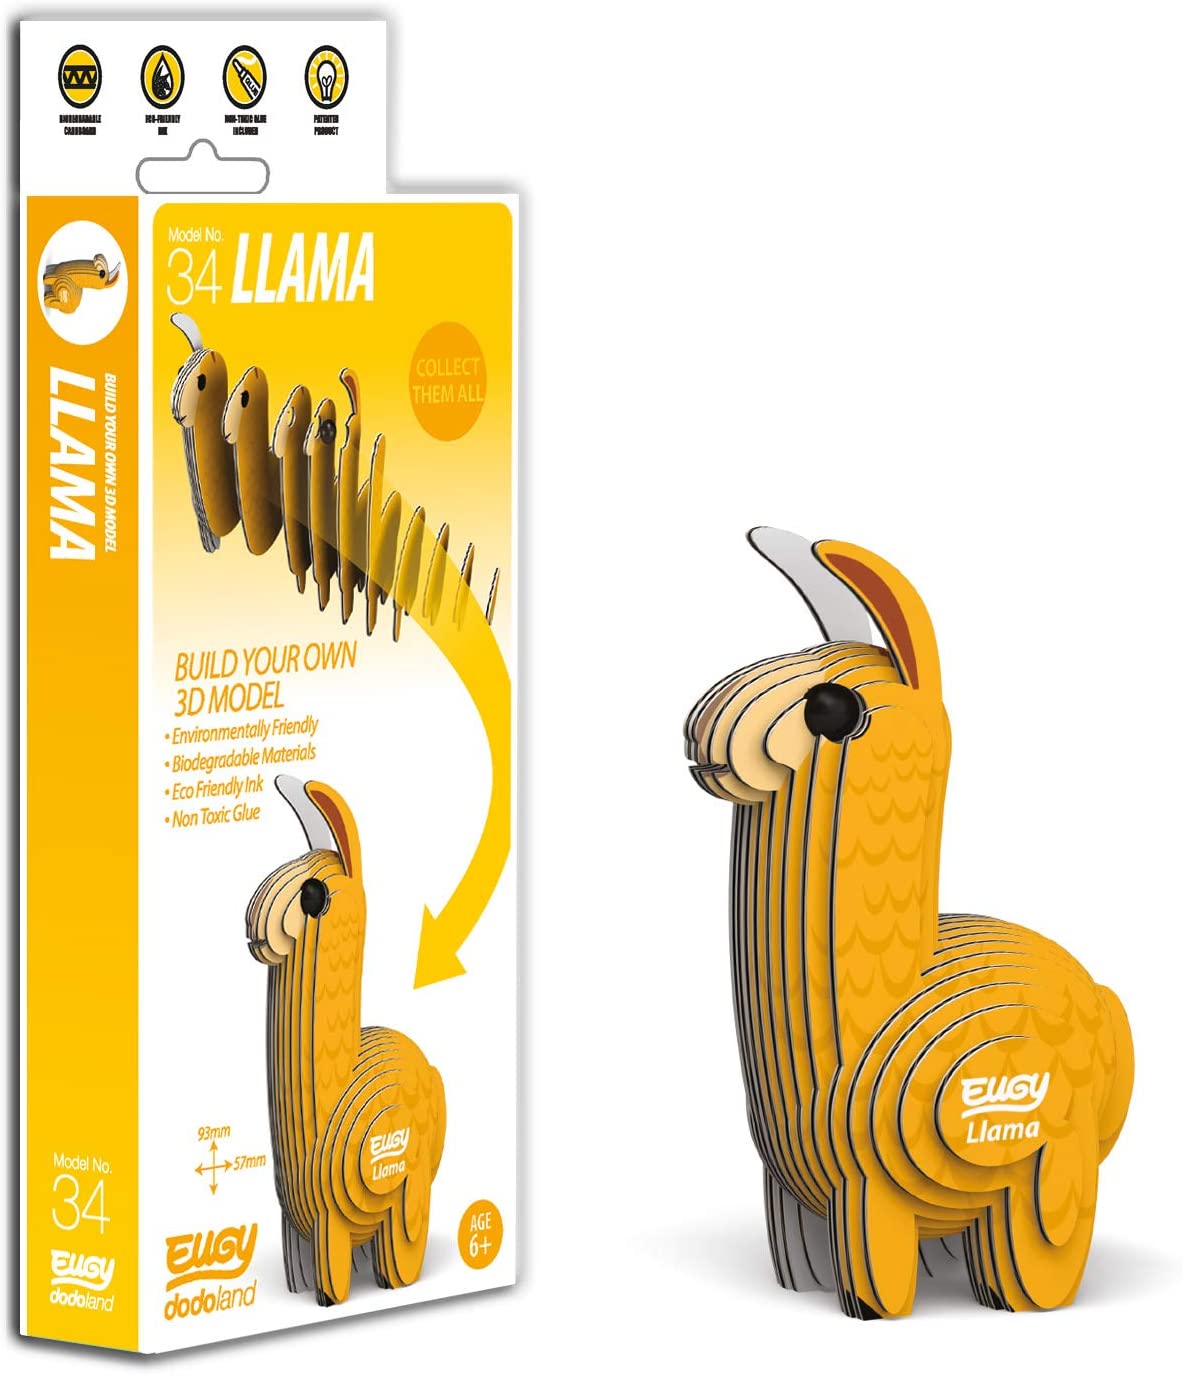 EUGY Llama 3D Puzzle